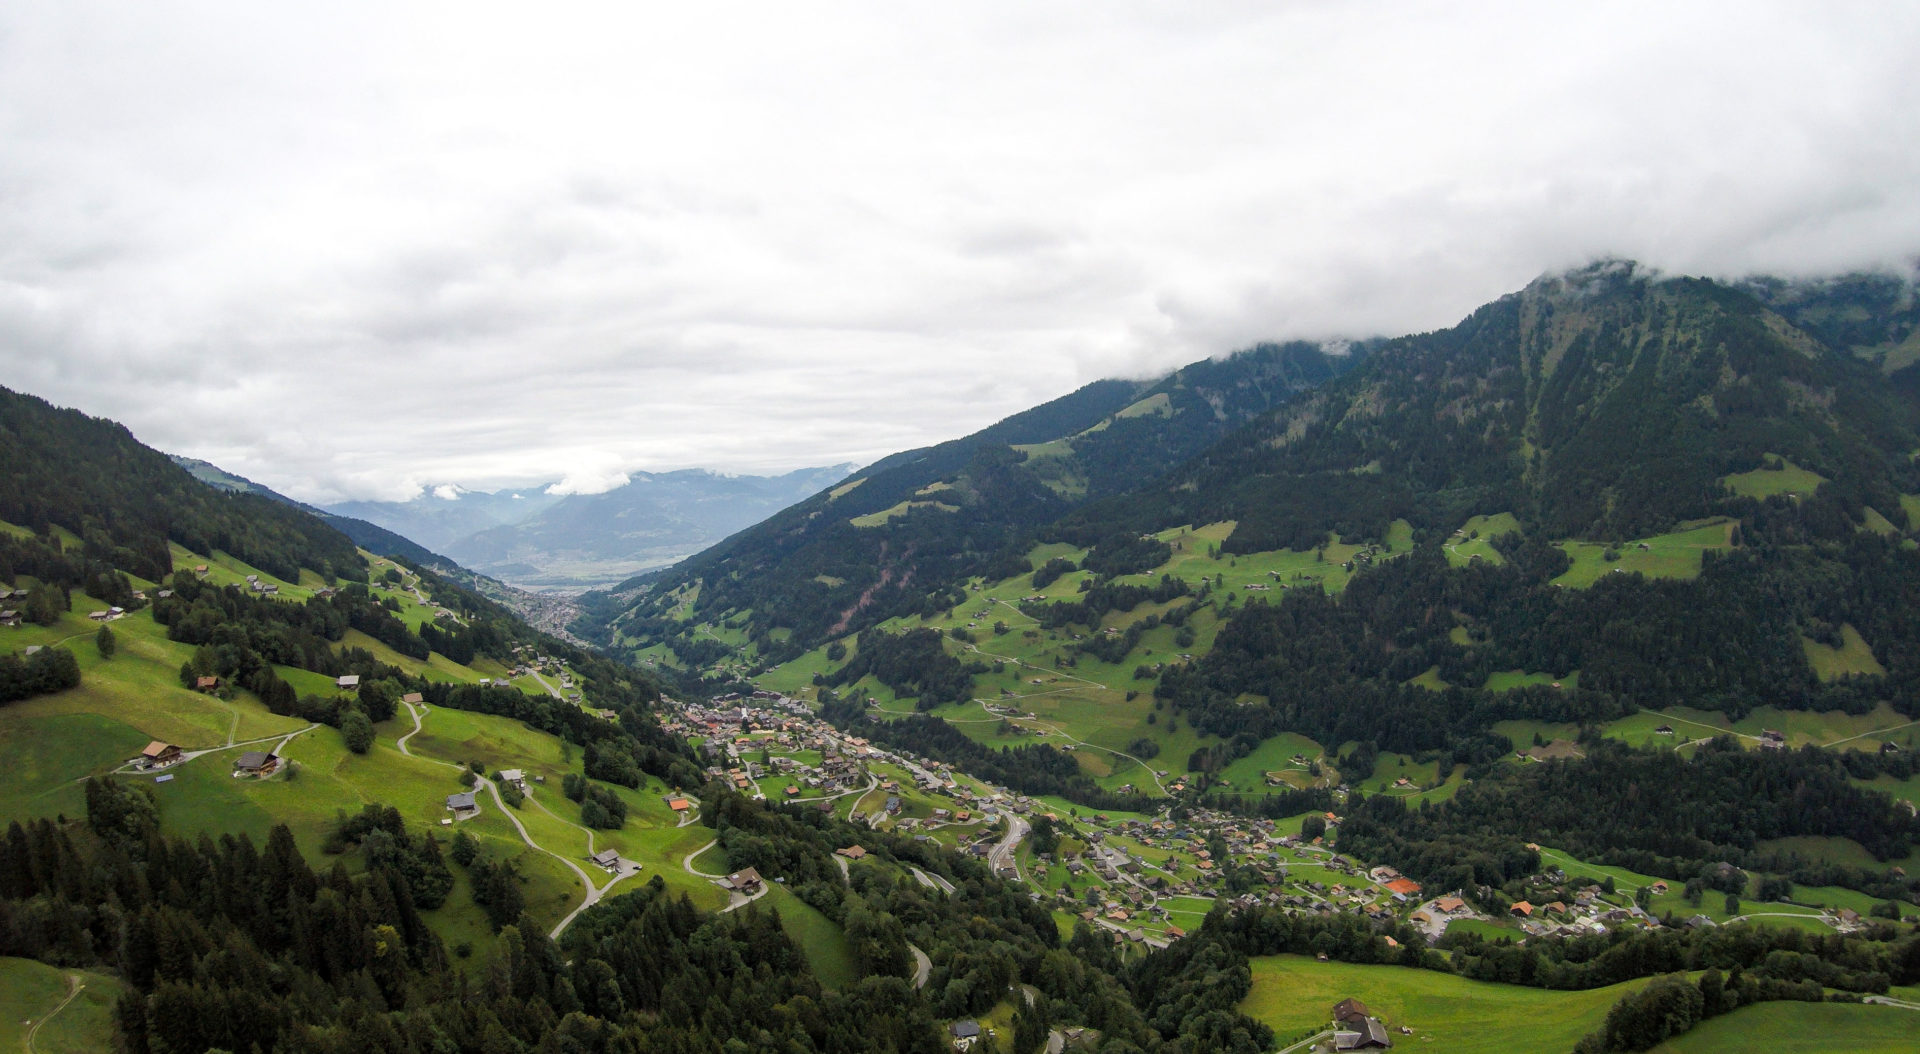 Vol en parapente à Val d'Illiez - Champéry: un séjour détente, nature et sport en Région Dents du Midi, au coeur du Valais dans les Alpes Suisses